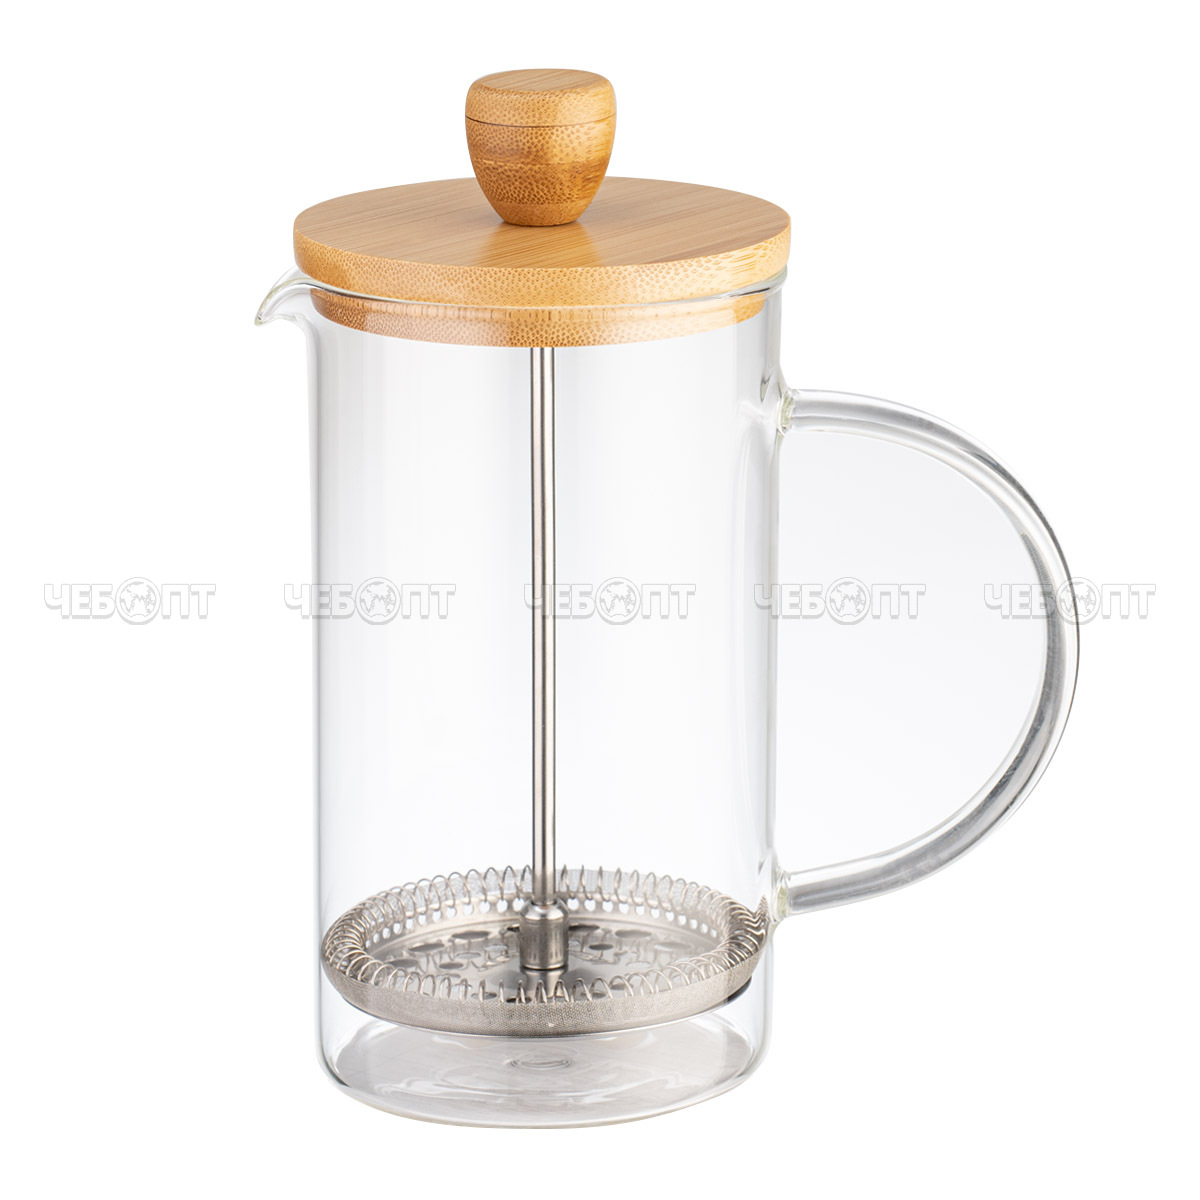 Чайник / кофейник френч-пресс 600 мл LARA  жаропрочное стекло, корпус пластмассовый, стальной фильтр, крышка-бамбук арт. LR06-52-600 [12]. ЧЕБОПТ.